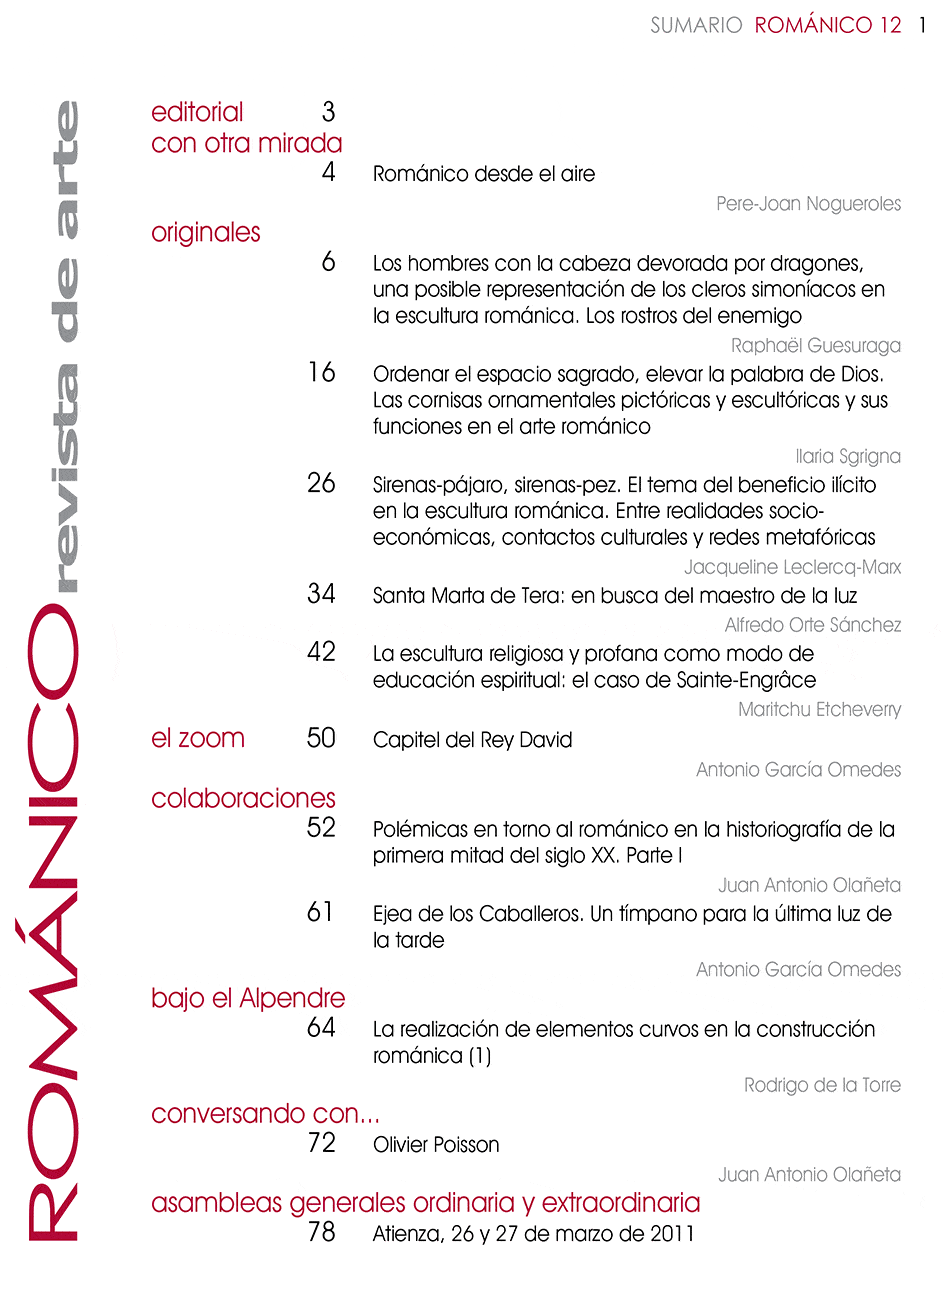 Indice de Contenidos Revista Amigos del Románico Nº12